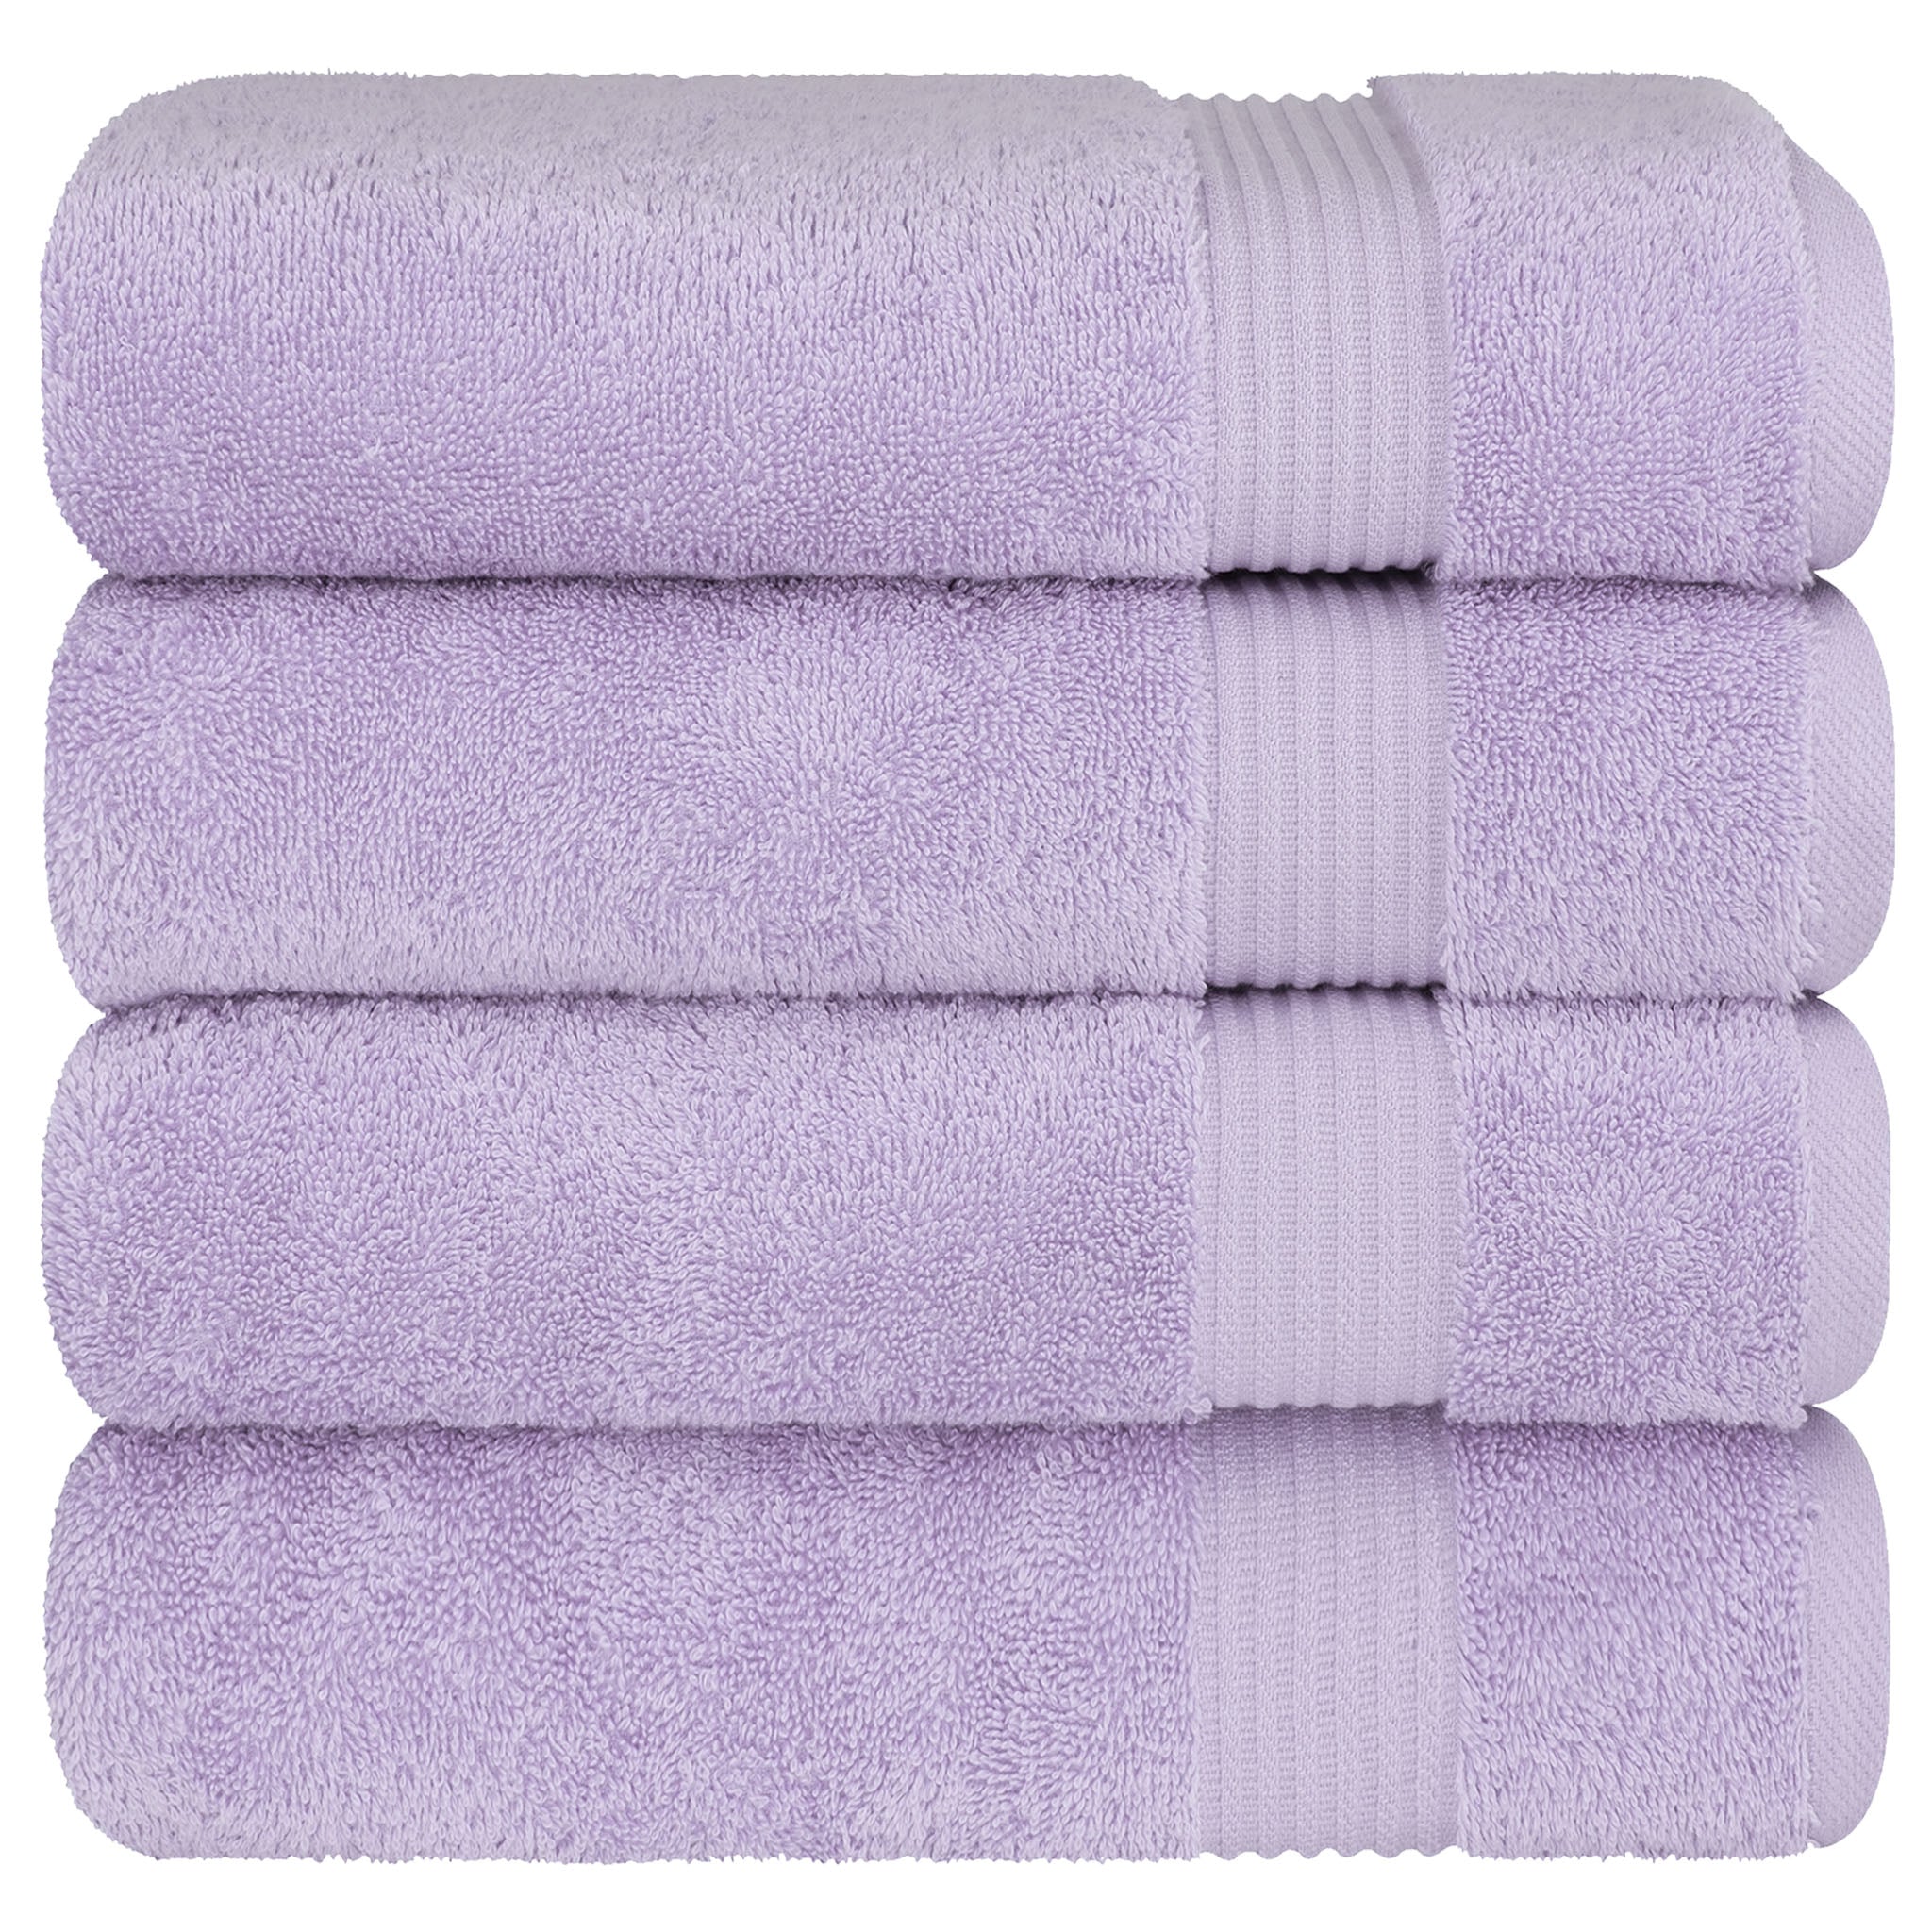 American Soft Linen Bekos 100% Cotton Turkish Towels, 4 Piece Bath Towel Set -lilac-06